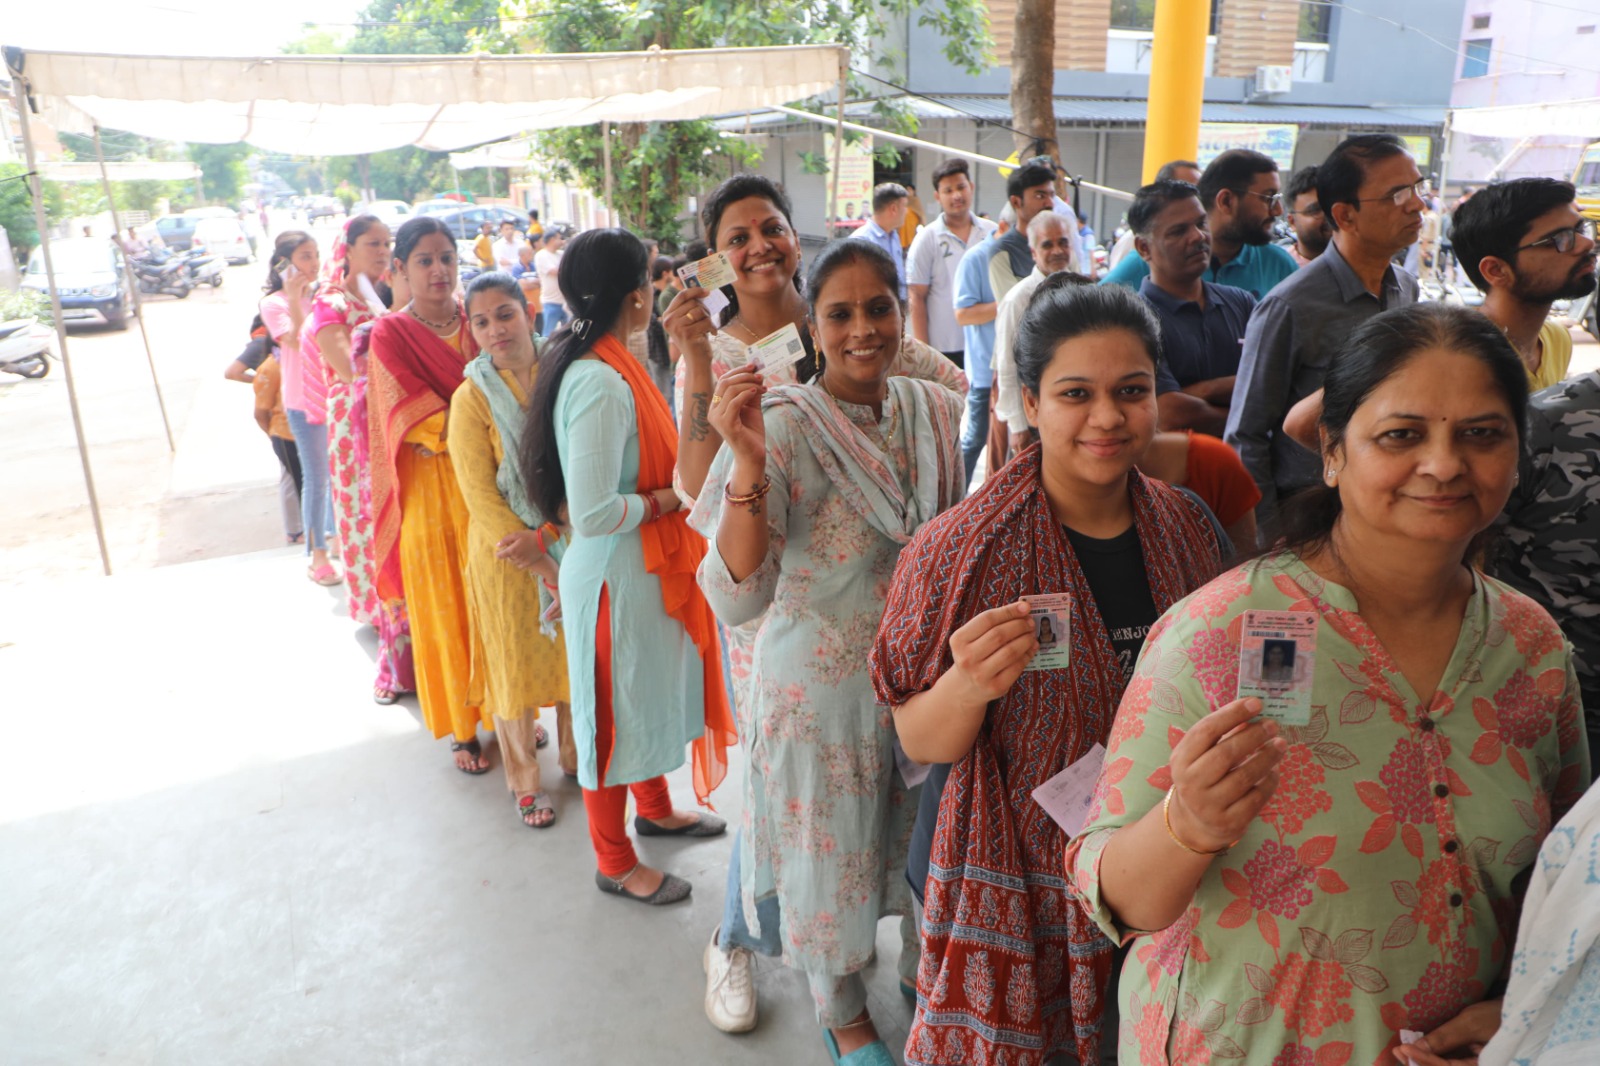 Madhya Pradesh : इंदौर जिले में उत्साह के साथ शांतिपूर्ण रूप से हुआ मतदान